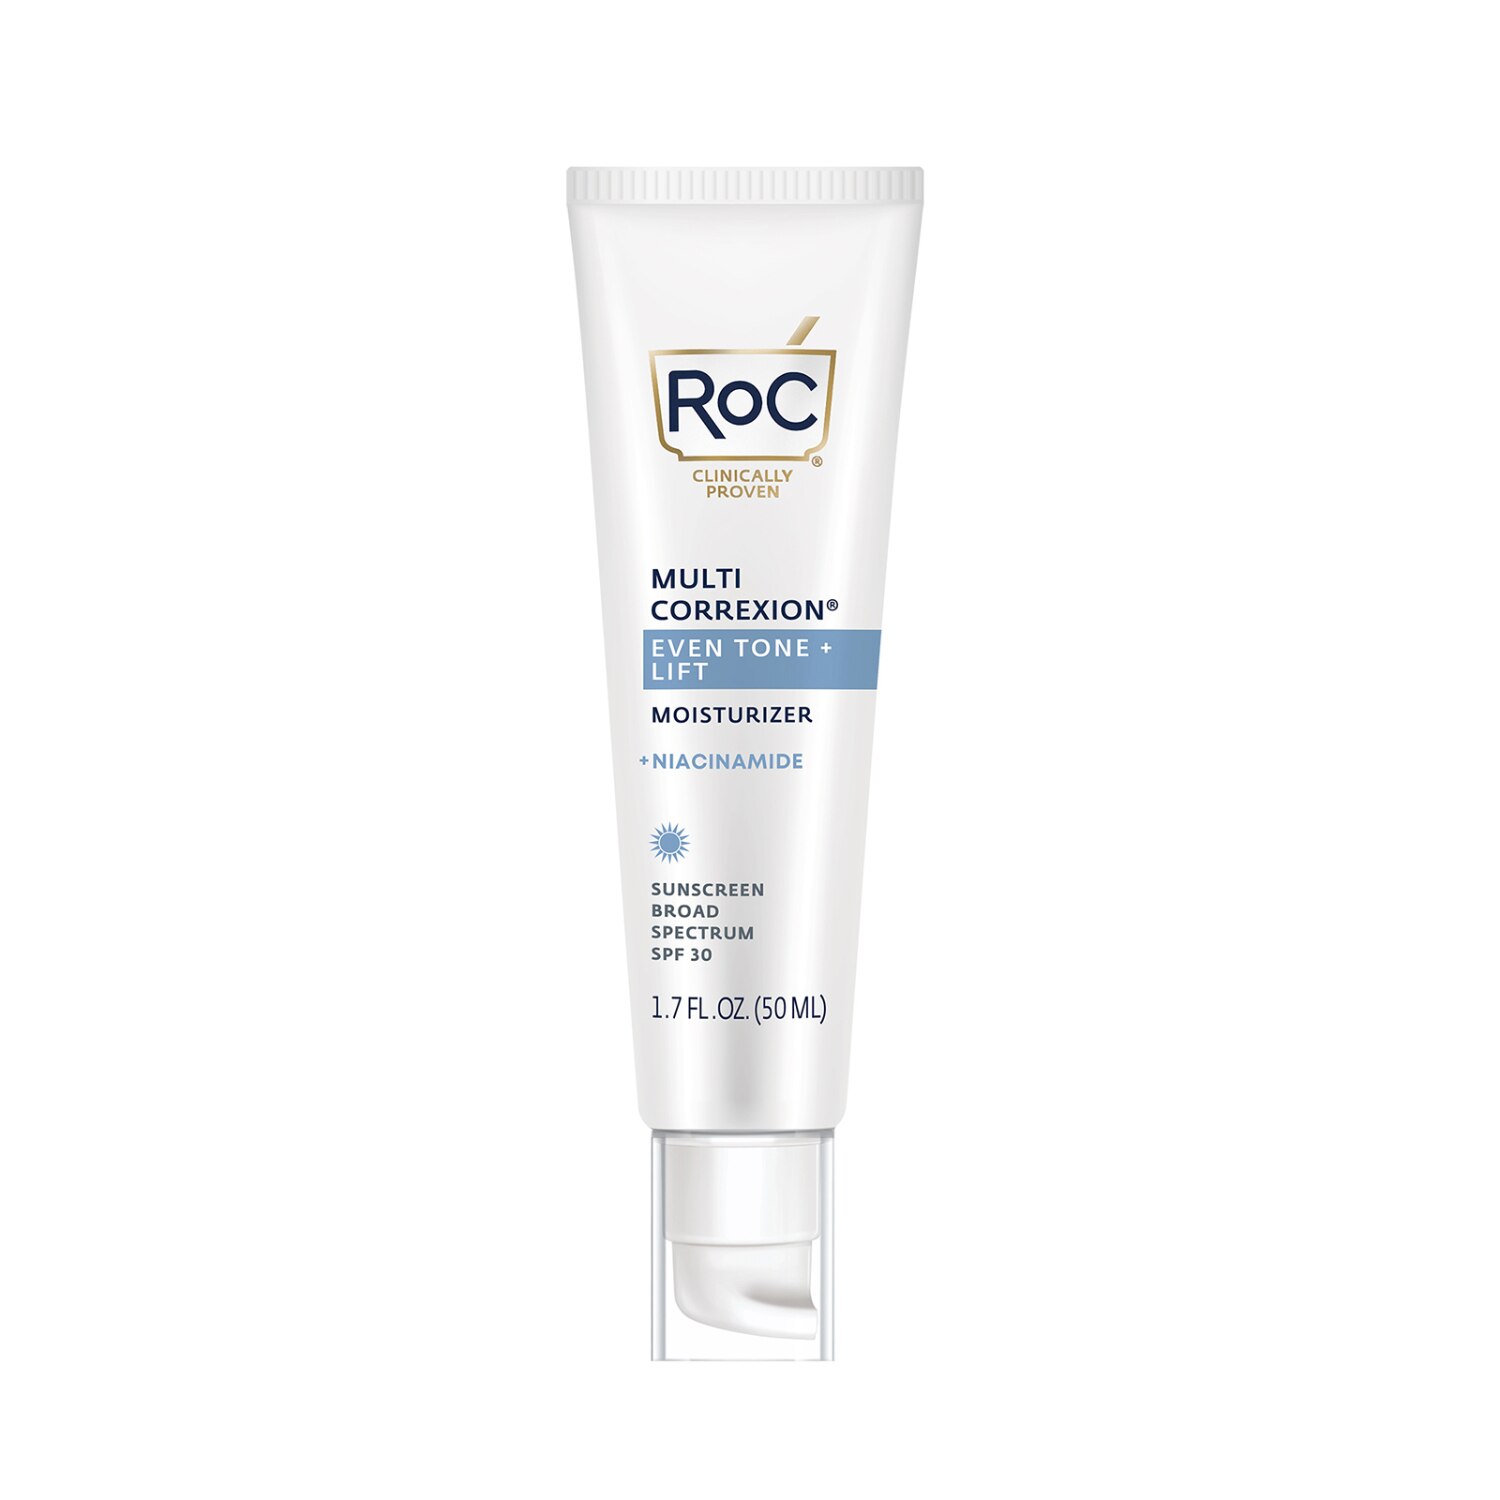 RoC Multi Correxion 5 In 1 Anti-Aging Face Moisturizer, 1.7 OZ